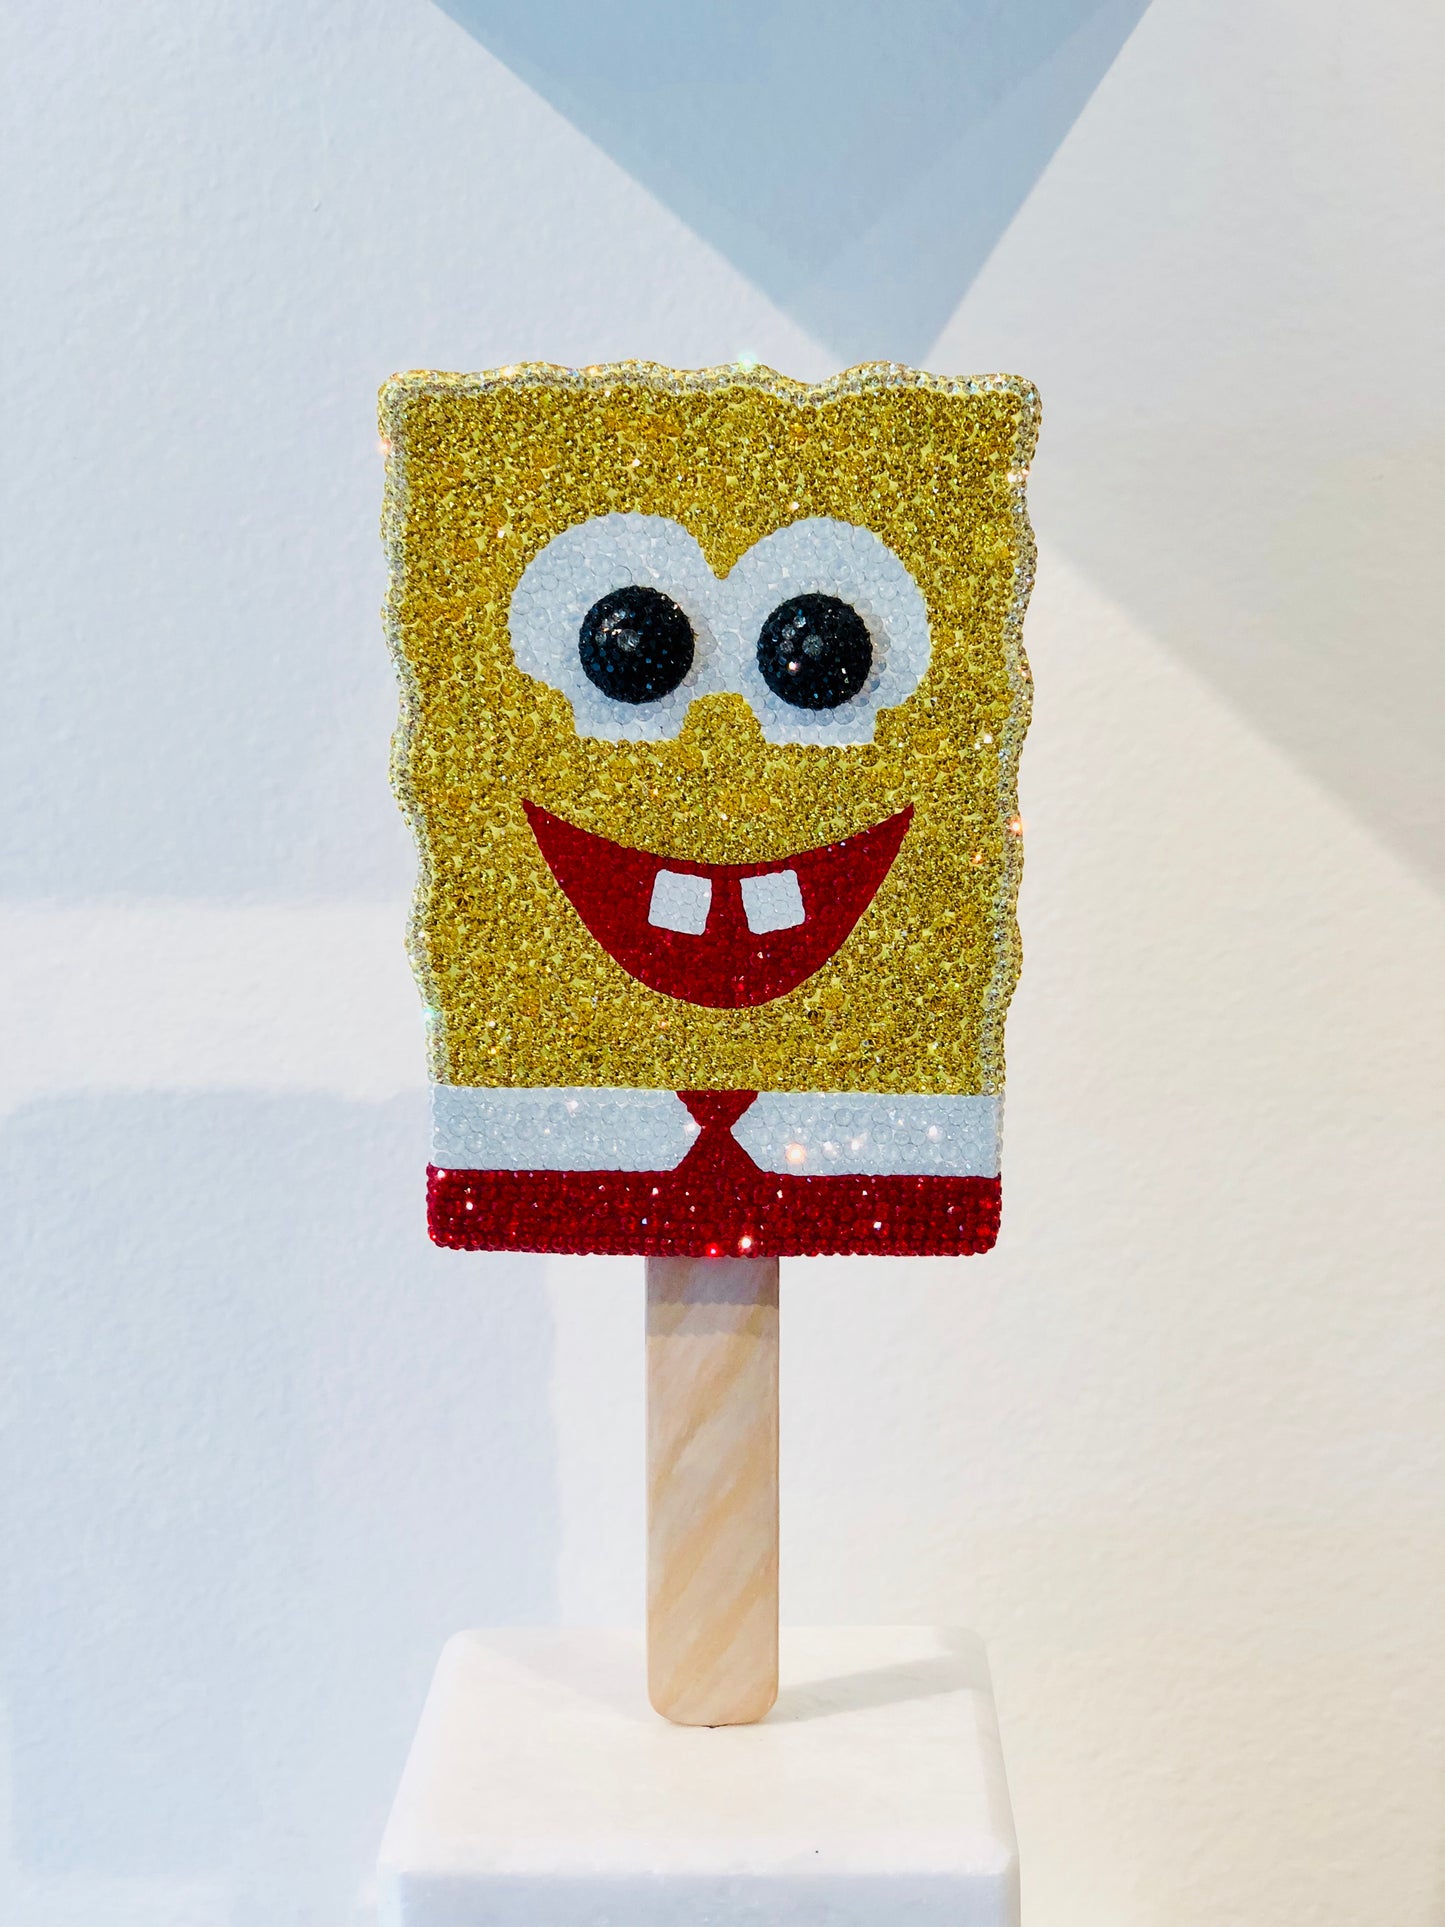 Spongebob Pop, 2018